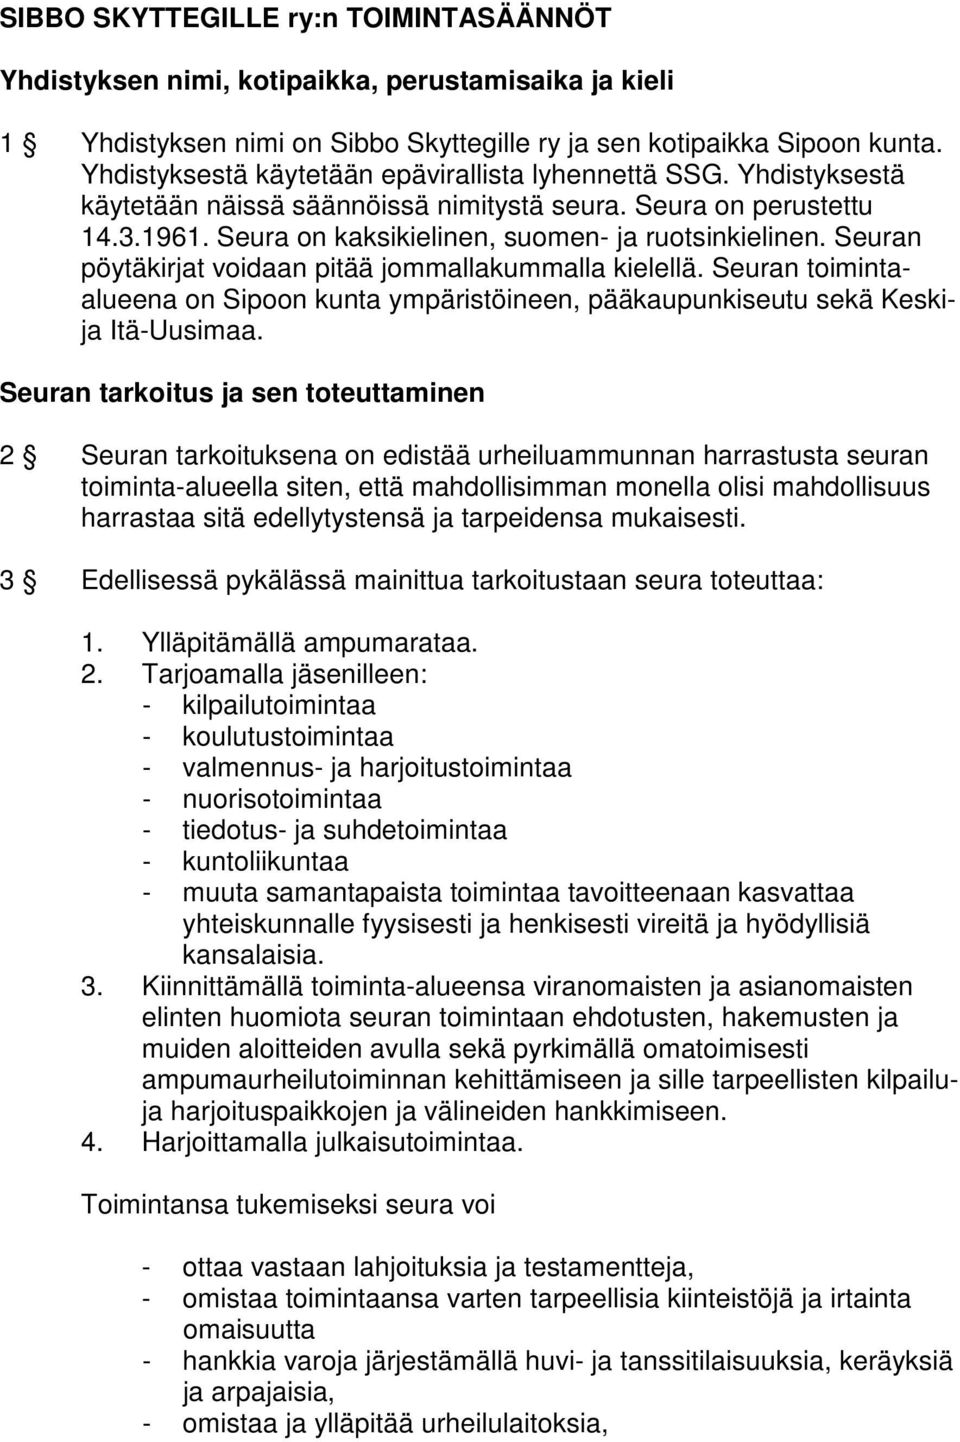 Seuran pöytäkirjat voidaan pitää jommallakummalla kielellä. Seuran toimintaalueena on Sipoon kunta ympäristöineen, pääkaupunkiseutu sekä Keskija Itä-Uusimaa.